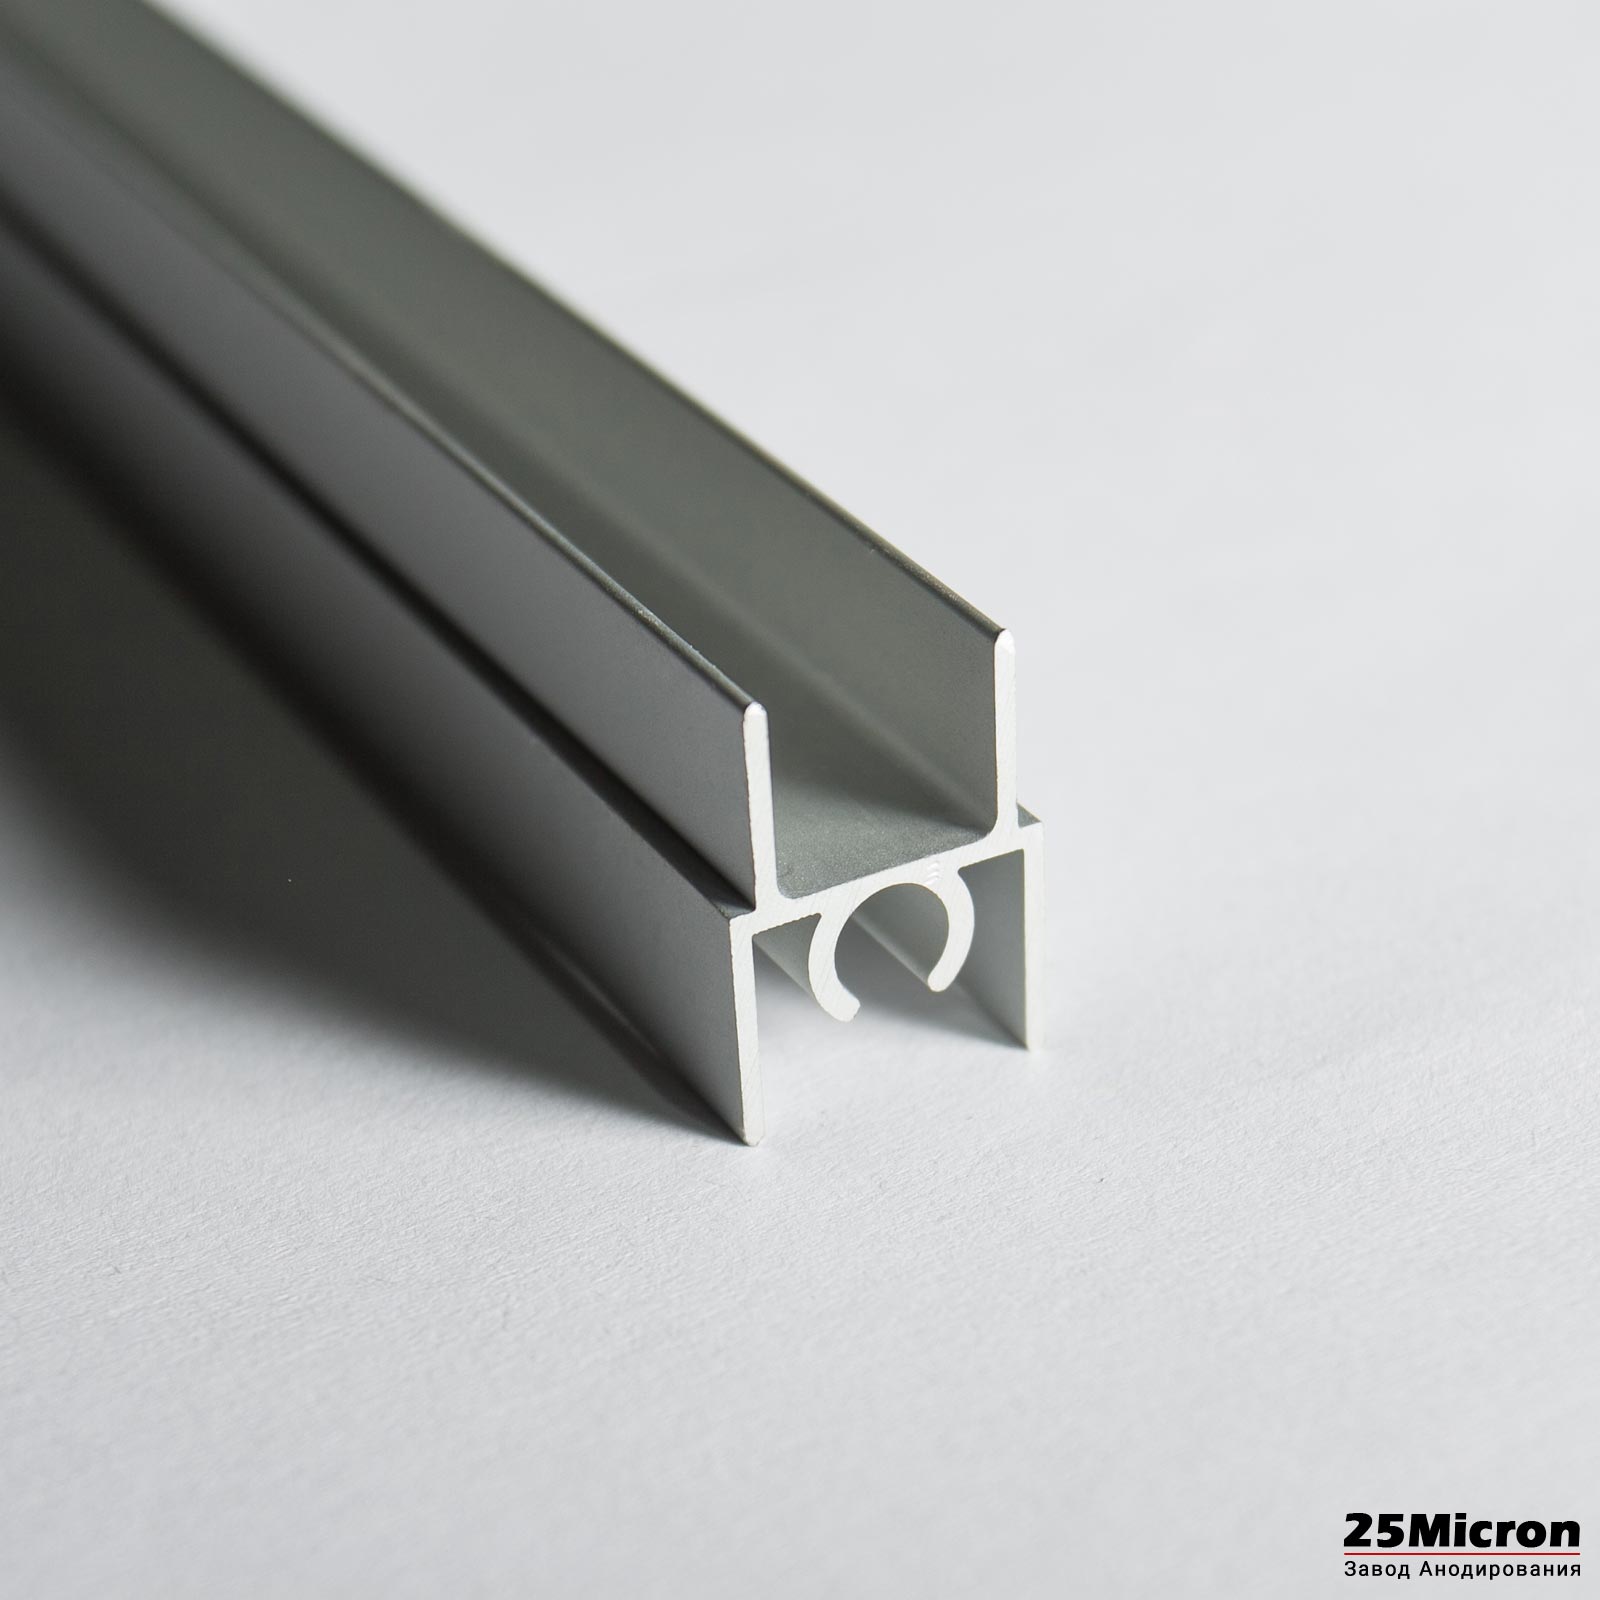 Алюминиевый профиль 25 микрон